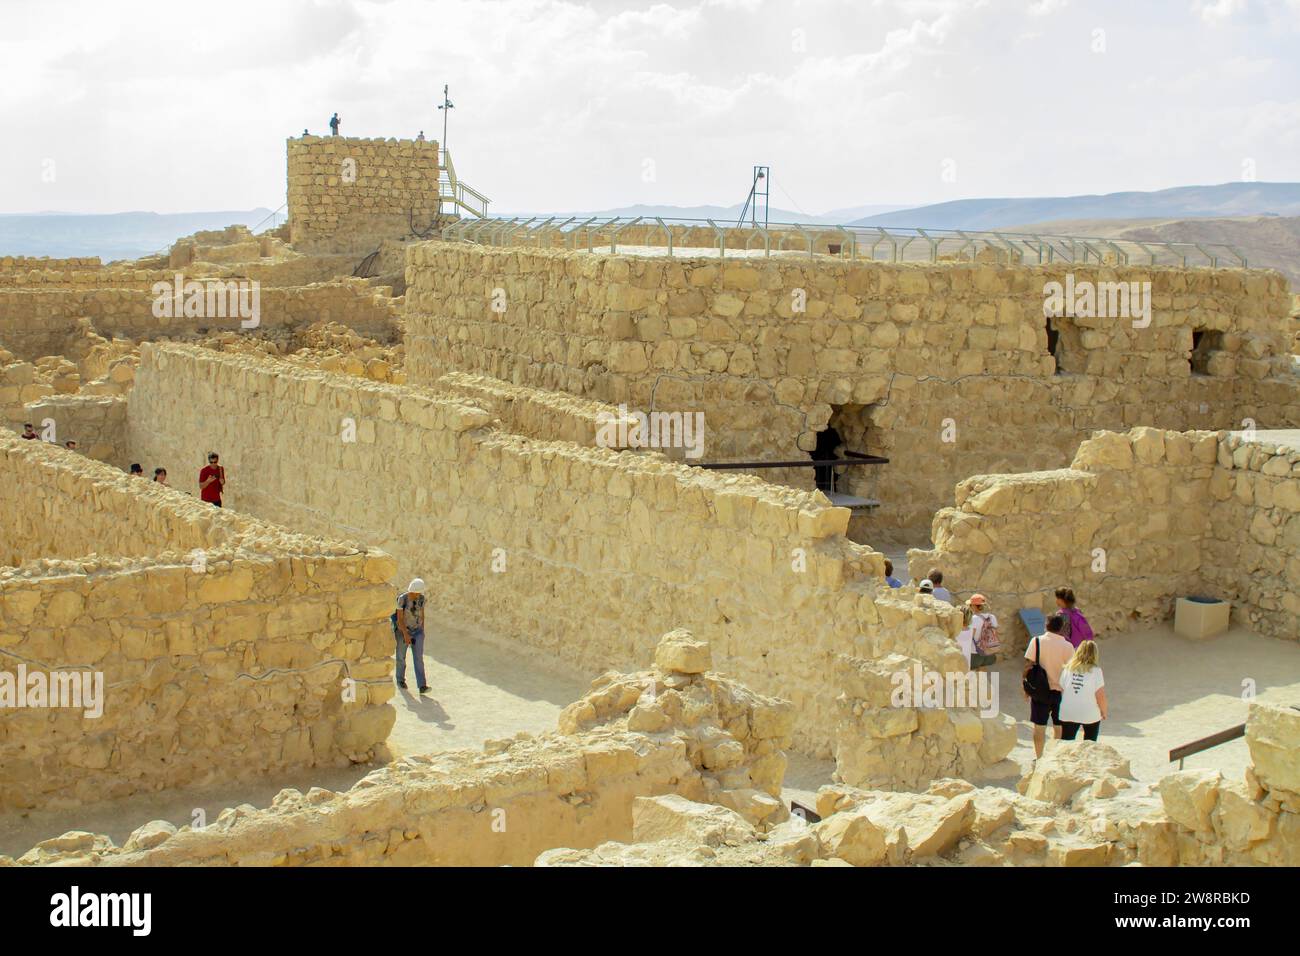 Il 2022 novembre, i turisti visitano le antiche rovine di Massada, costruite da Erode il grande, e l'antico sito della rivolta ebraica contro gli occupati romani Foto Stock